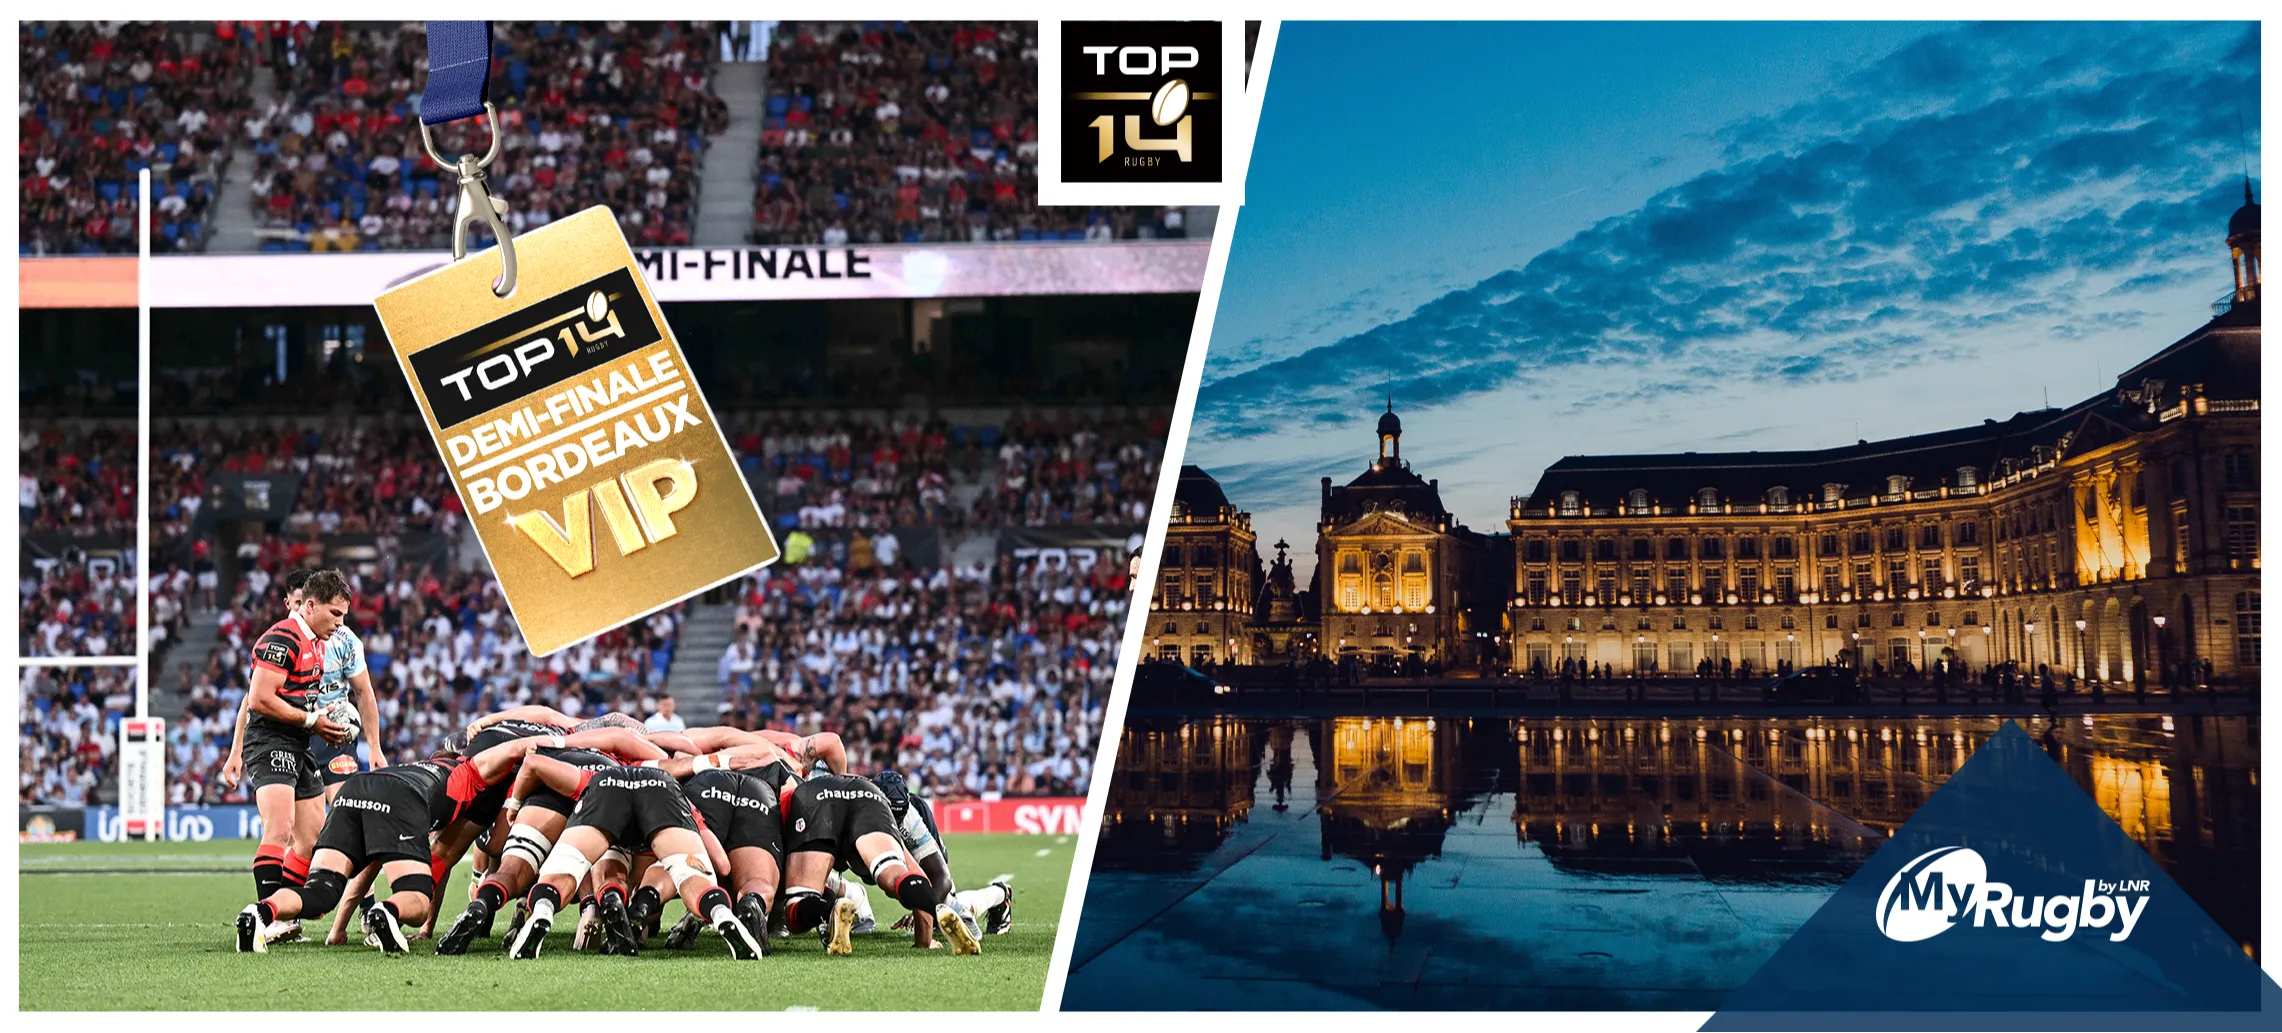 Vivez un week-end VIP à Bordeaux pour les 1/2 finales du TOP 14 !